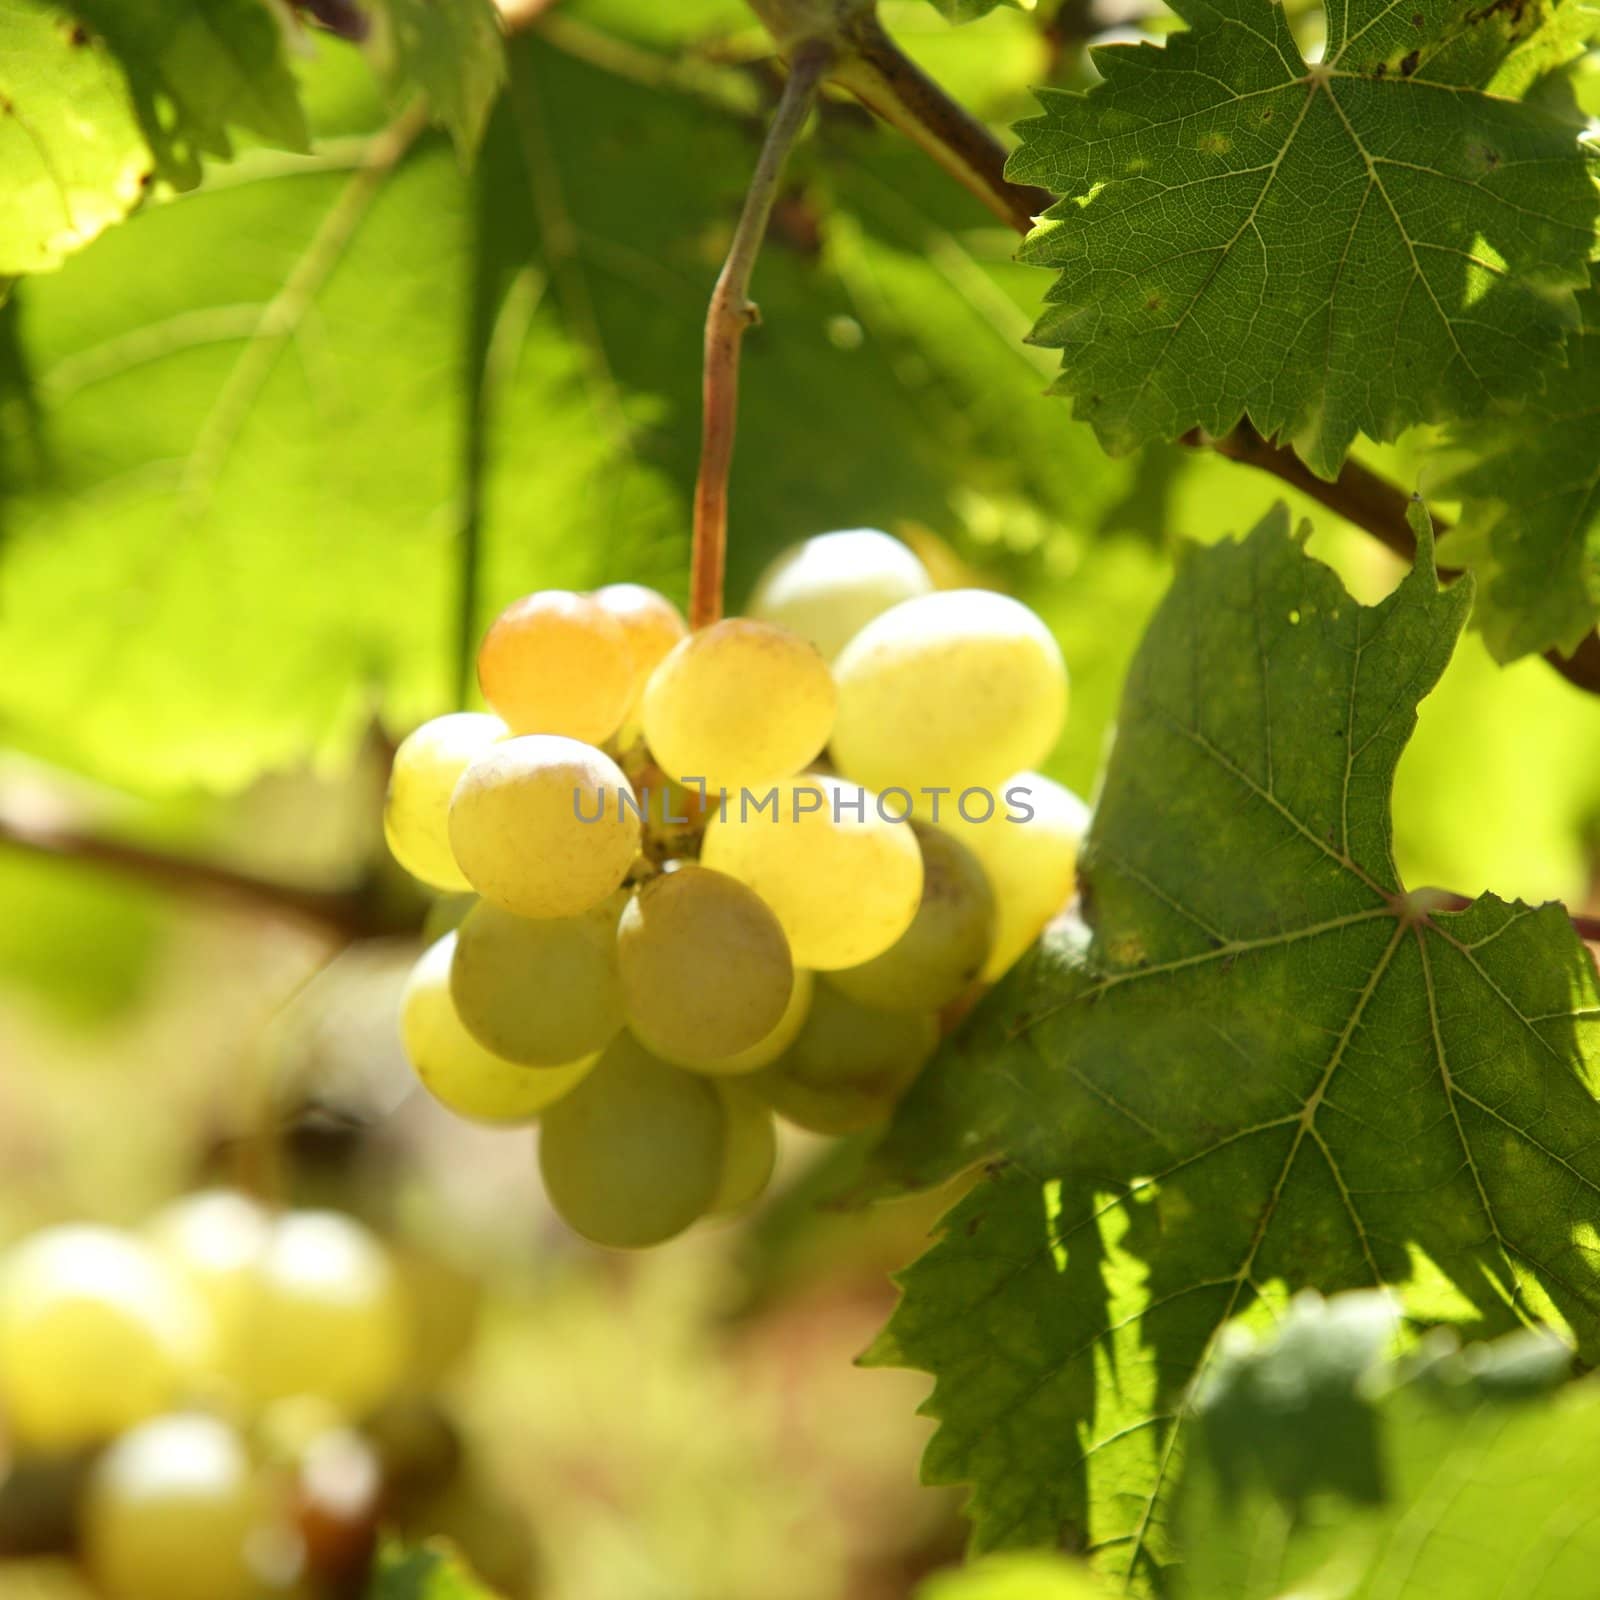 Vineyard, grape fields in mediterranean Spain by lunamarina